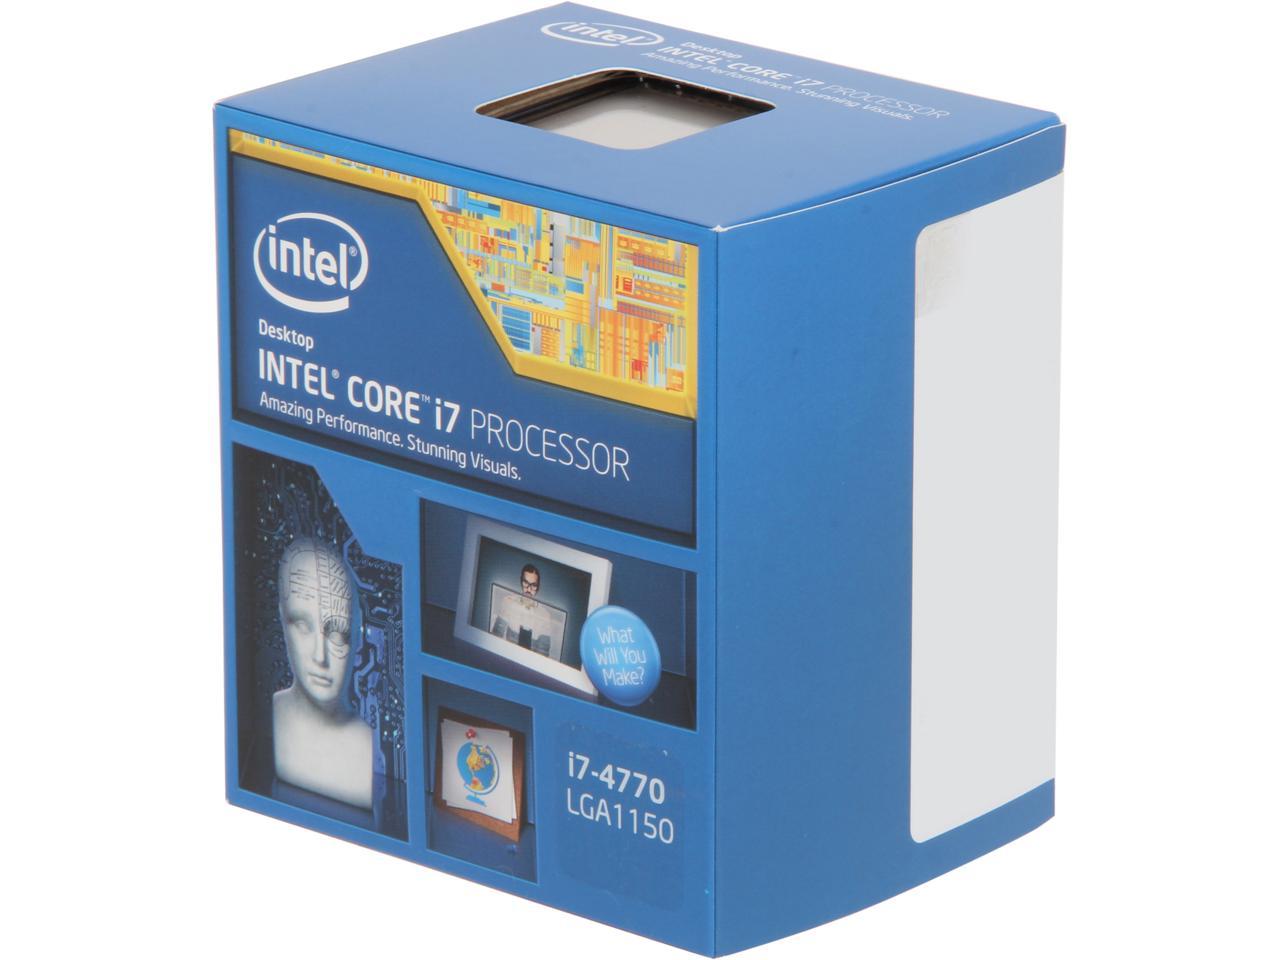 Intel Core i7-4770 Quad-Core Desktop Processor 3.4 GHZ  LGA 1150 8 MB Cache BX80646I74770